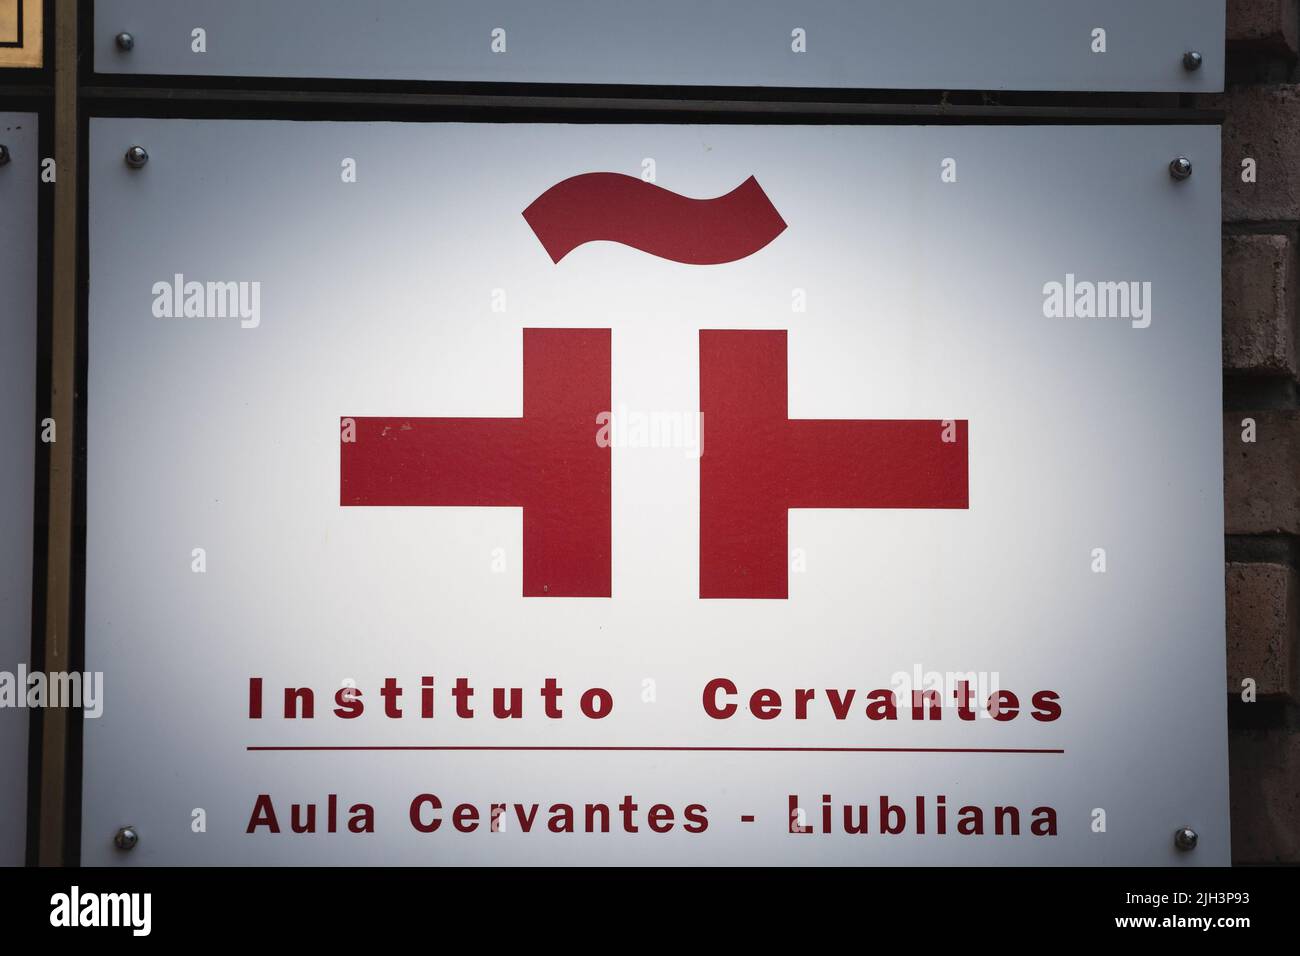 Foto dell'Instituto Cervantes di Lubiana, Slovenia, con il logo e l'icona dell'ambasciata spagnola. L'Istituto Cervantes è un istituto mondiale Foto Stock